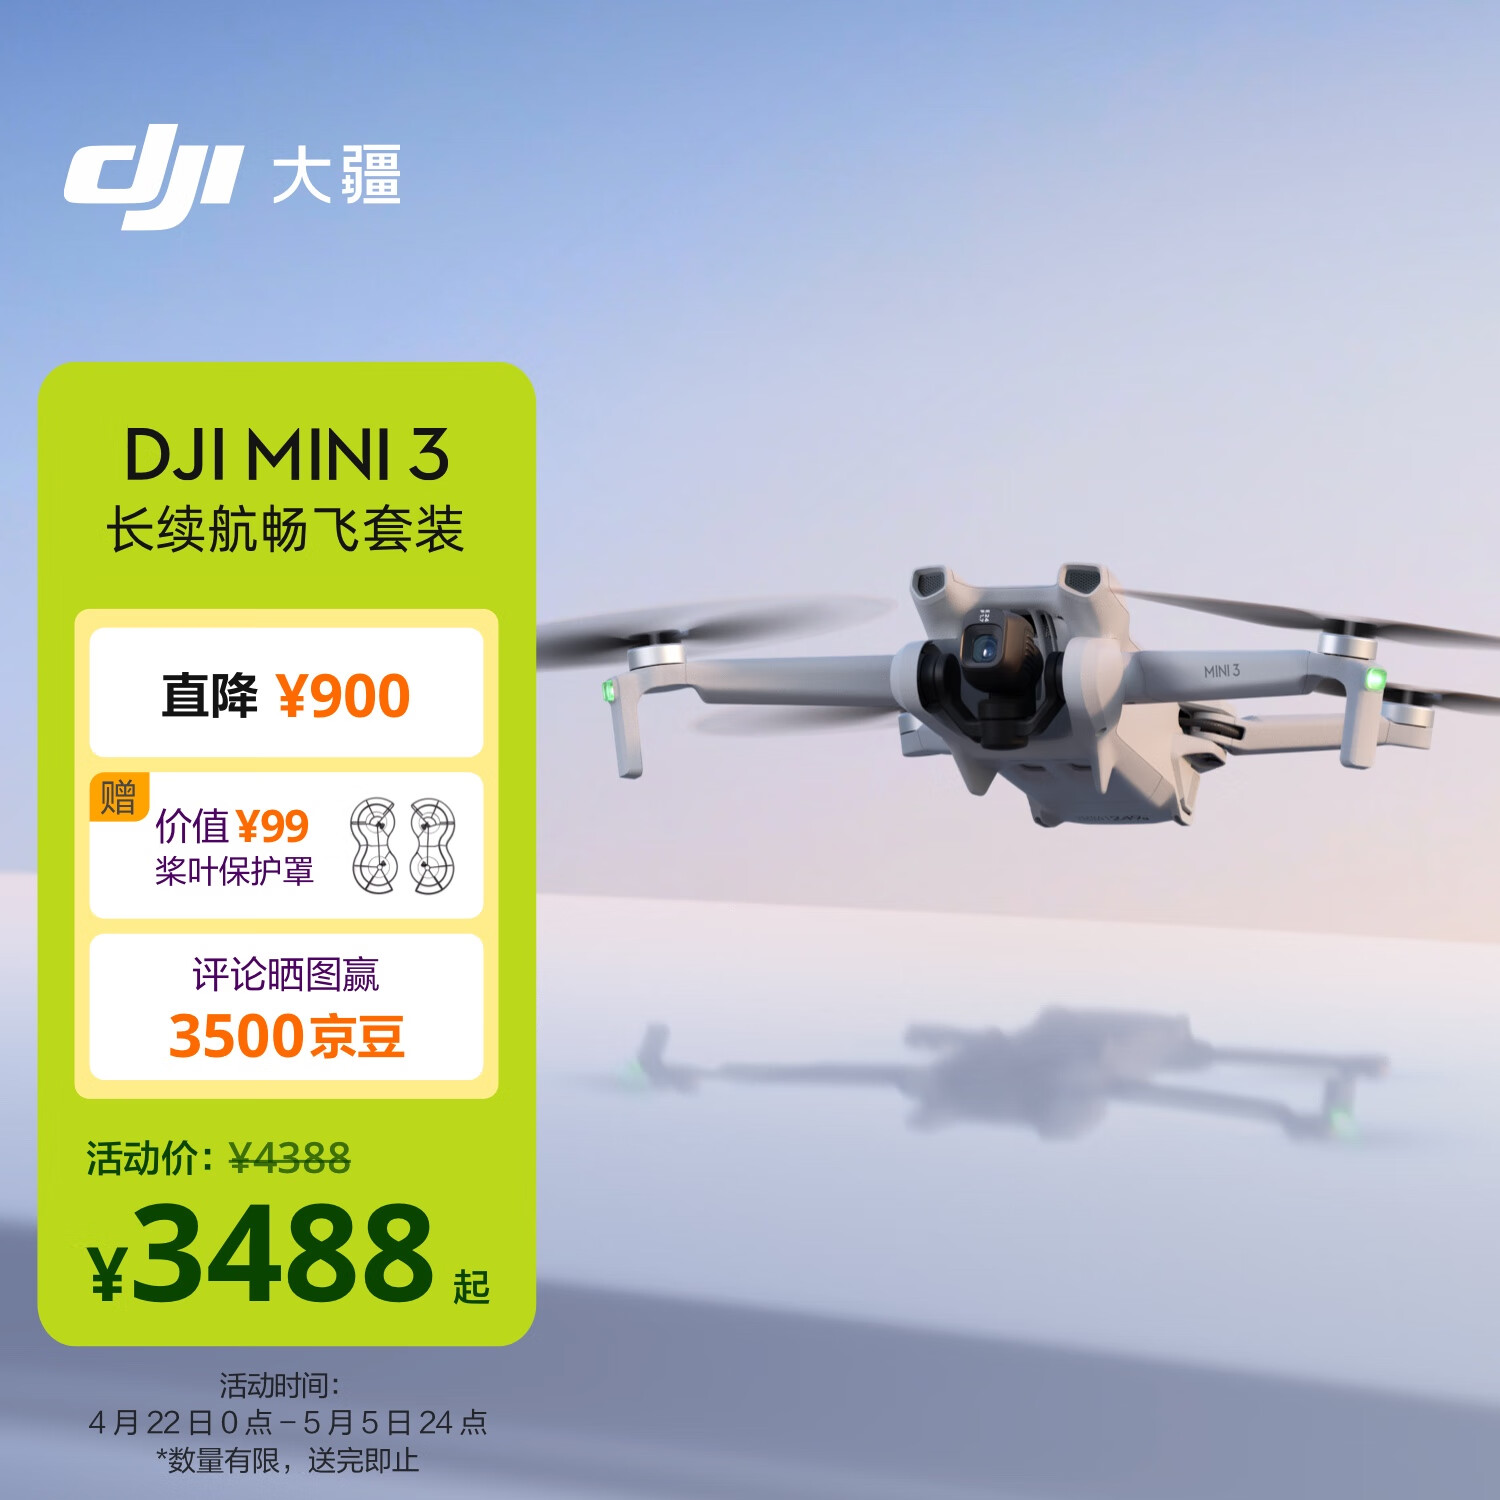 DJI 大疆 Mini 3 长续航畅飞套装 优选迷你航拍机 智能高清拍摄小型遥控飞机+随心换 1 年版实体卡 3816元